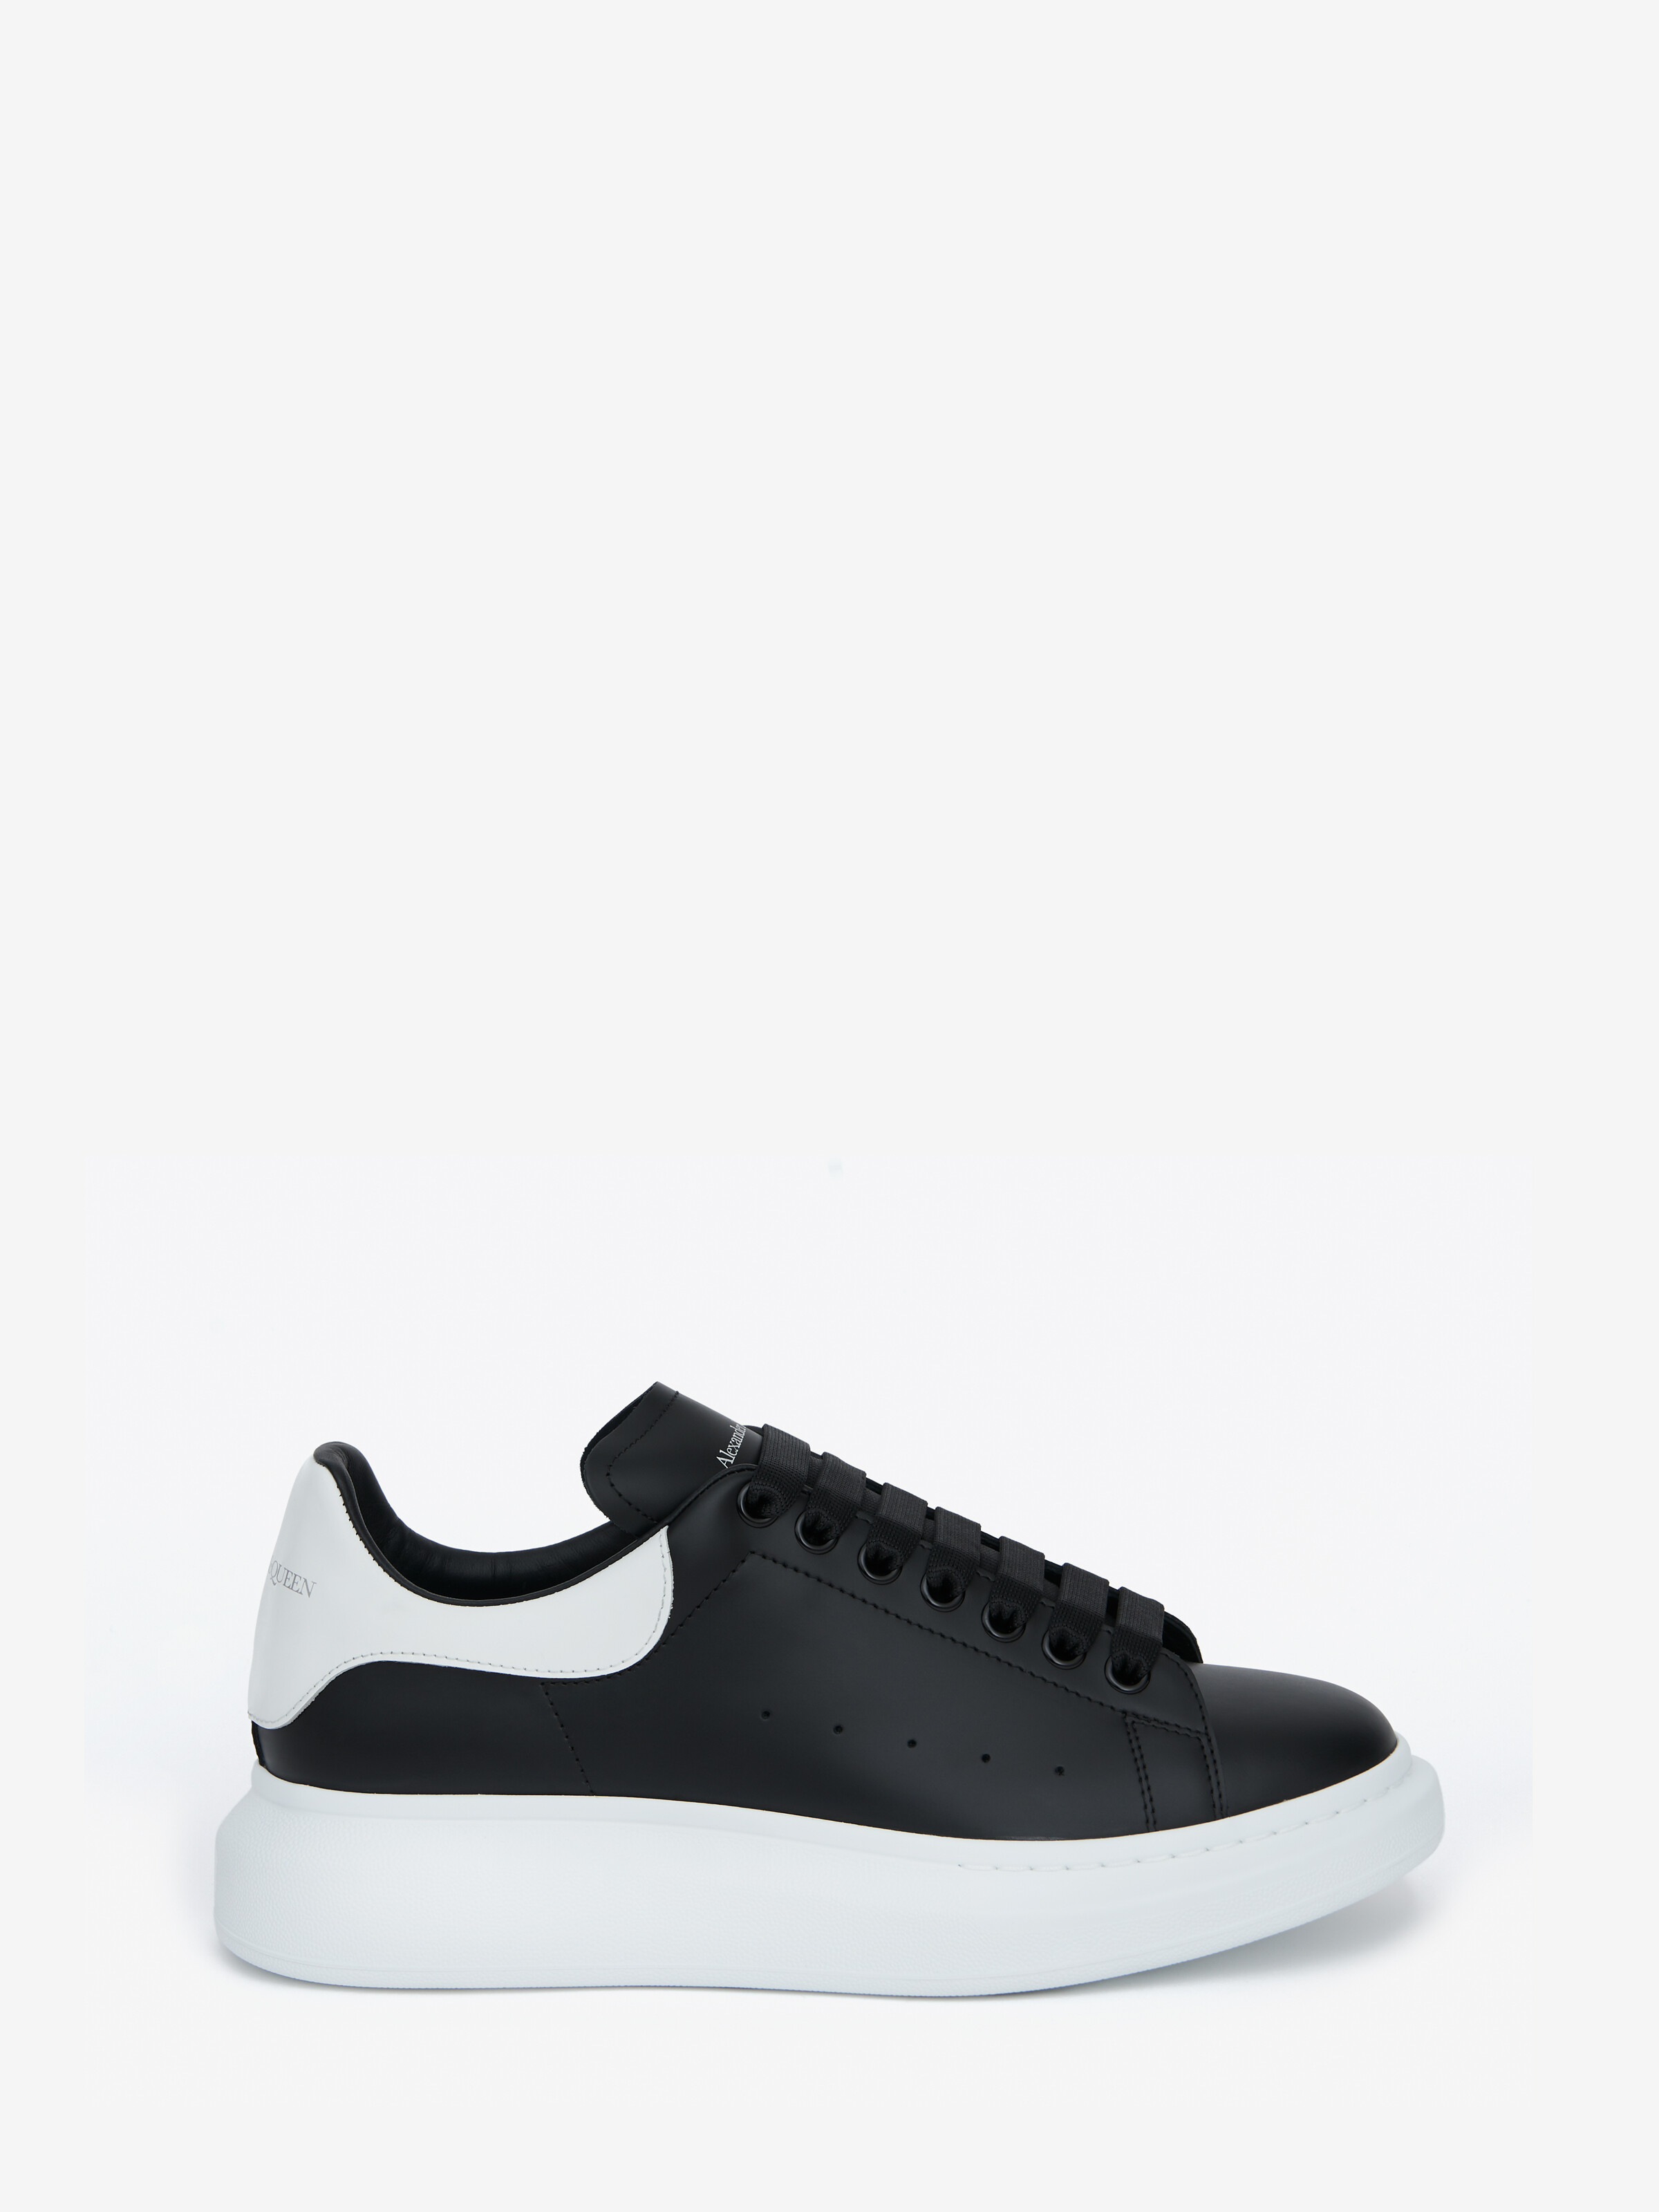 Oversized Sneaker in Black/White 